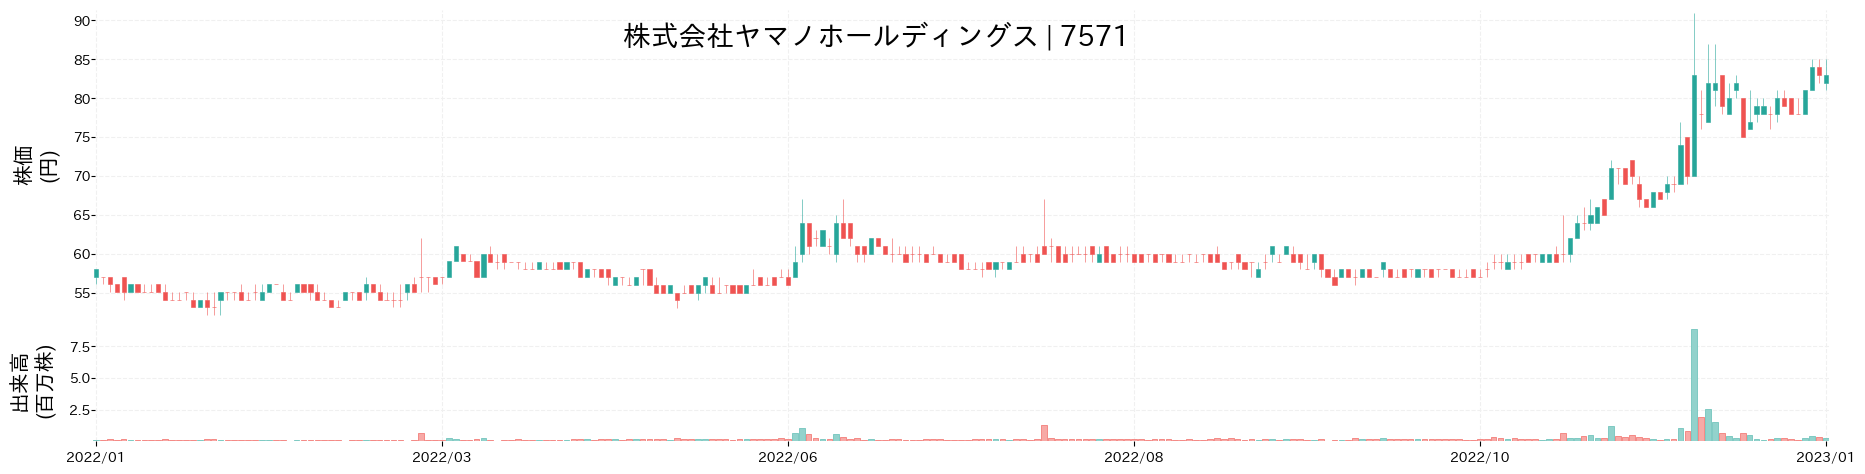 ヤマノホールディングスの株価推移(2022)